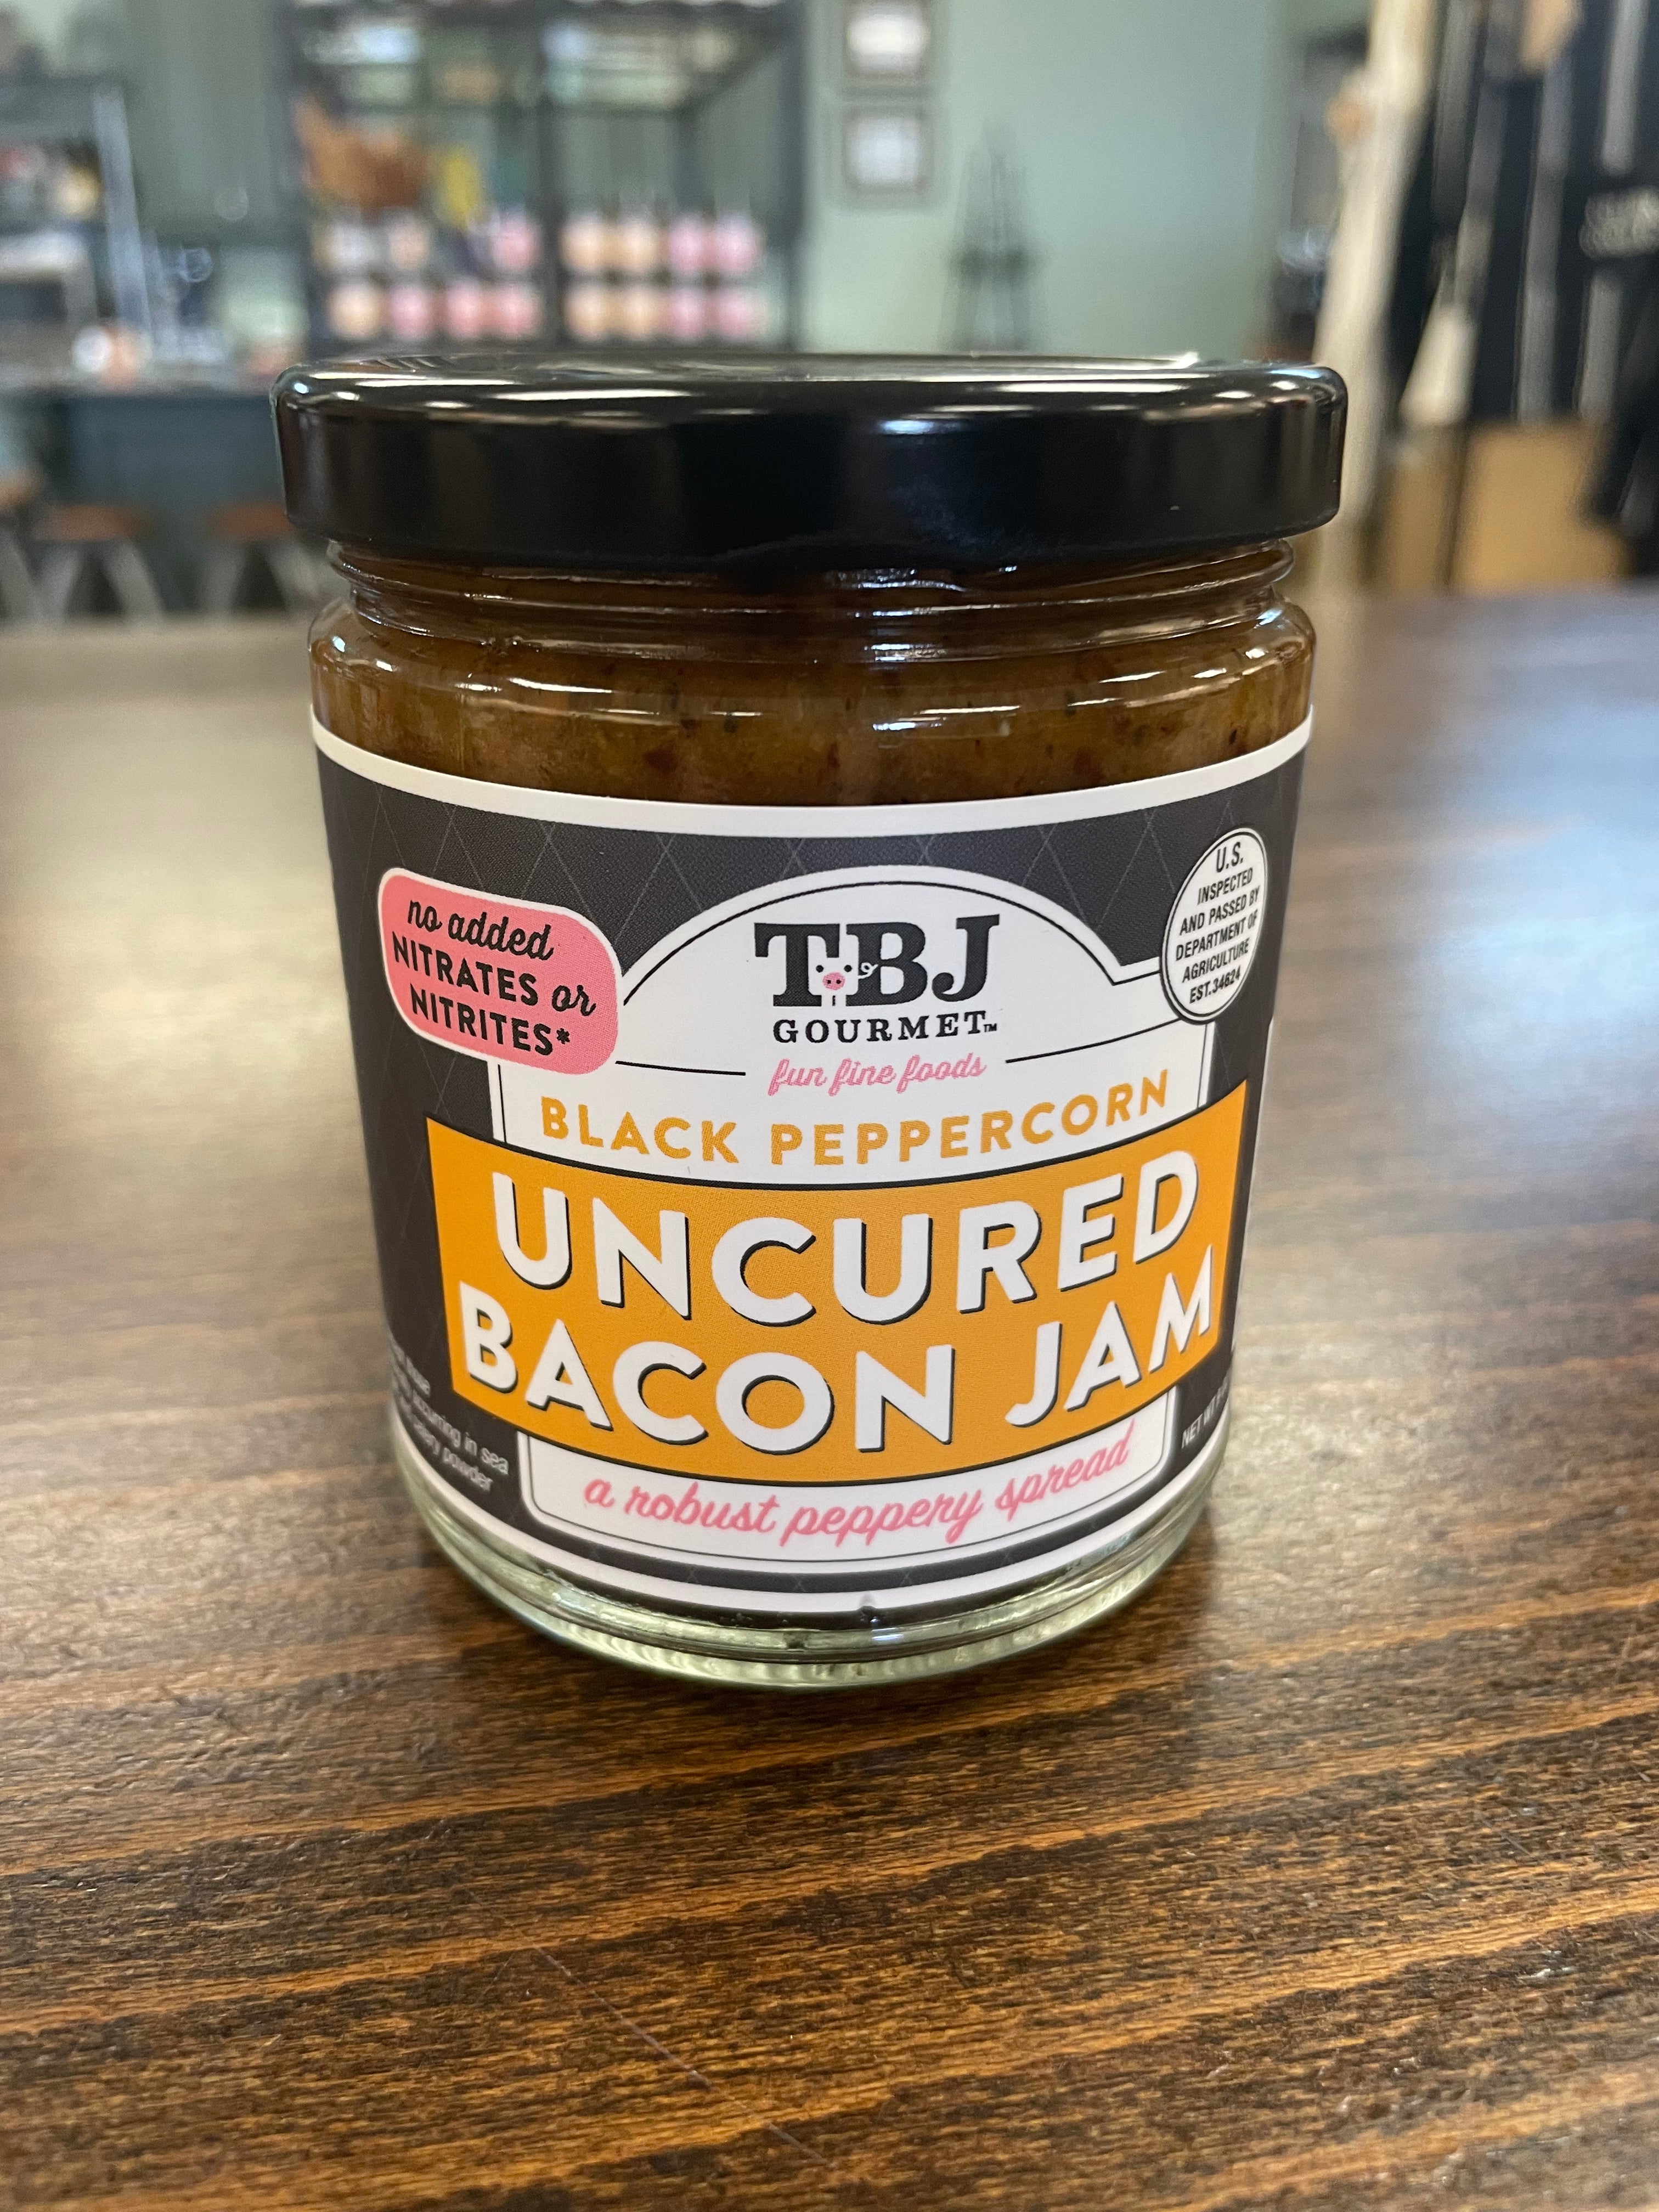 Black Peppercorn Bacon Jam